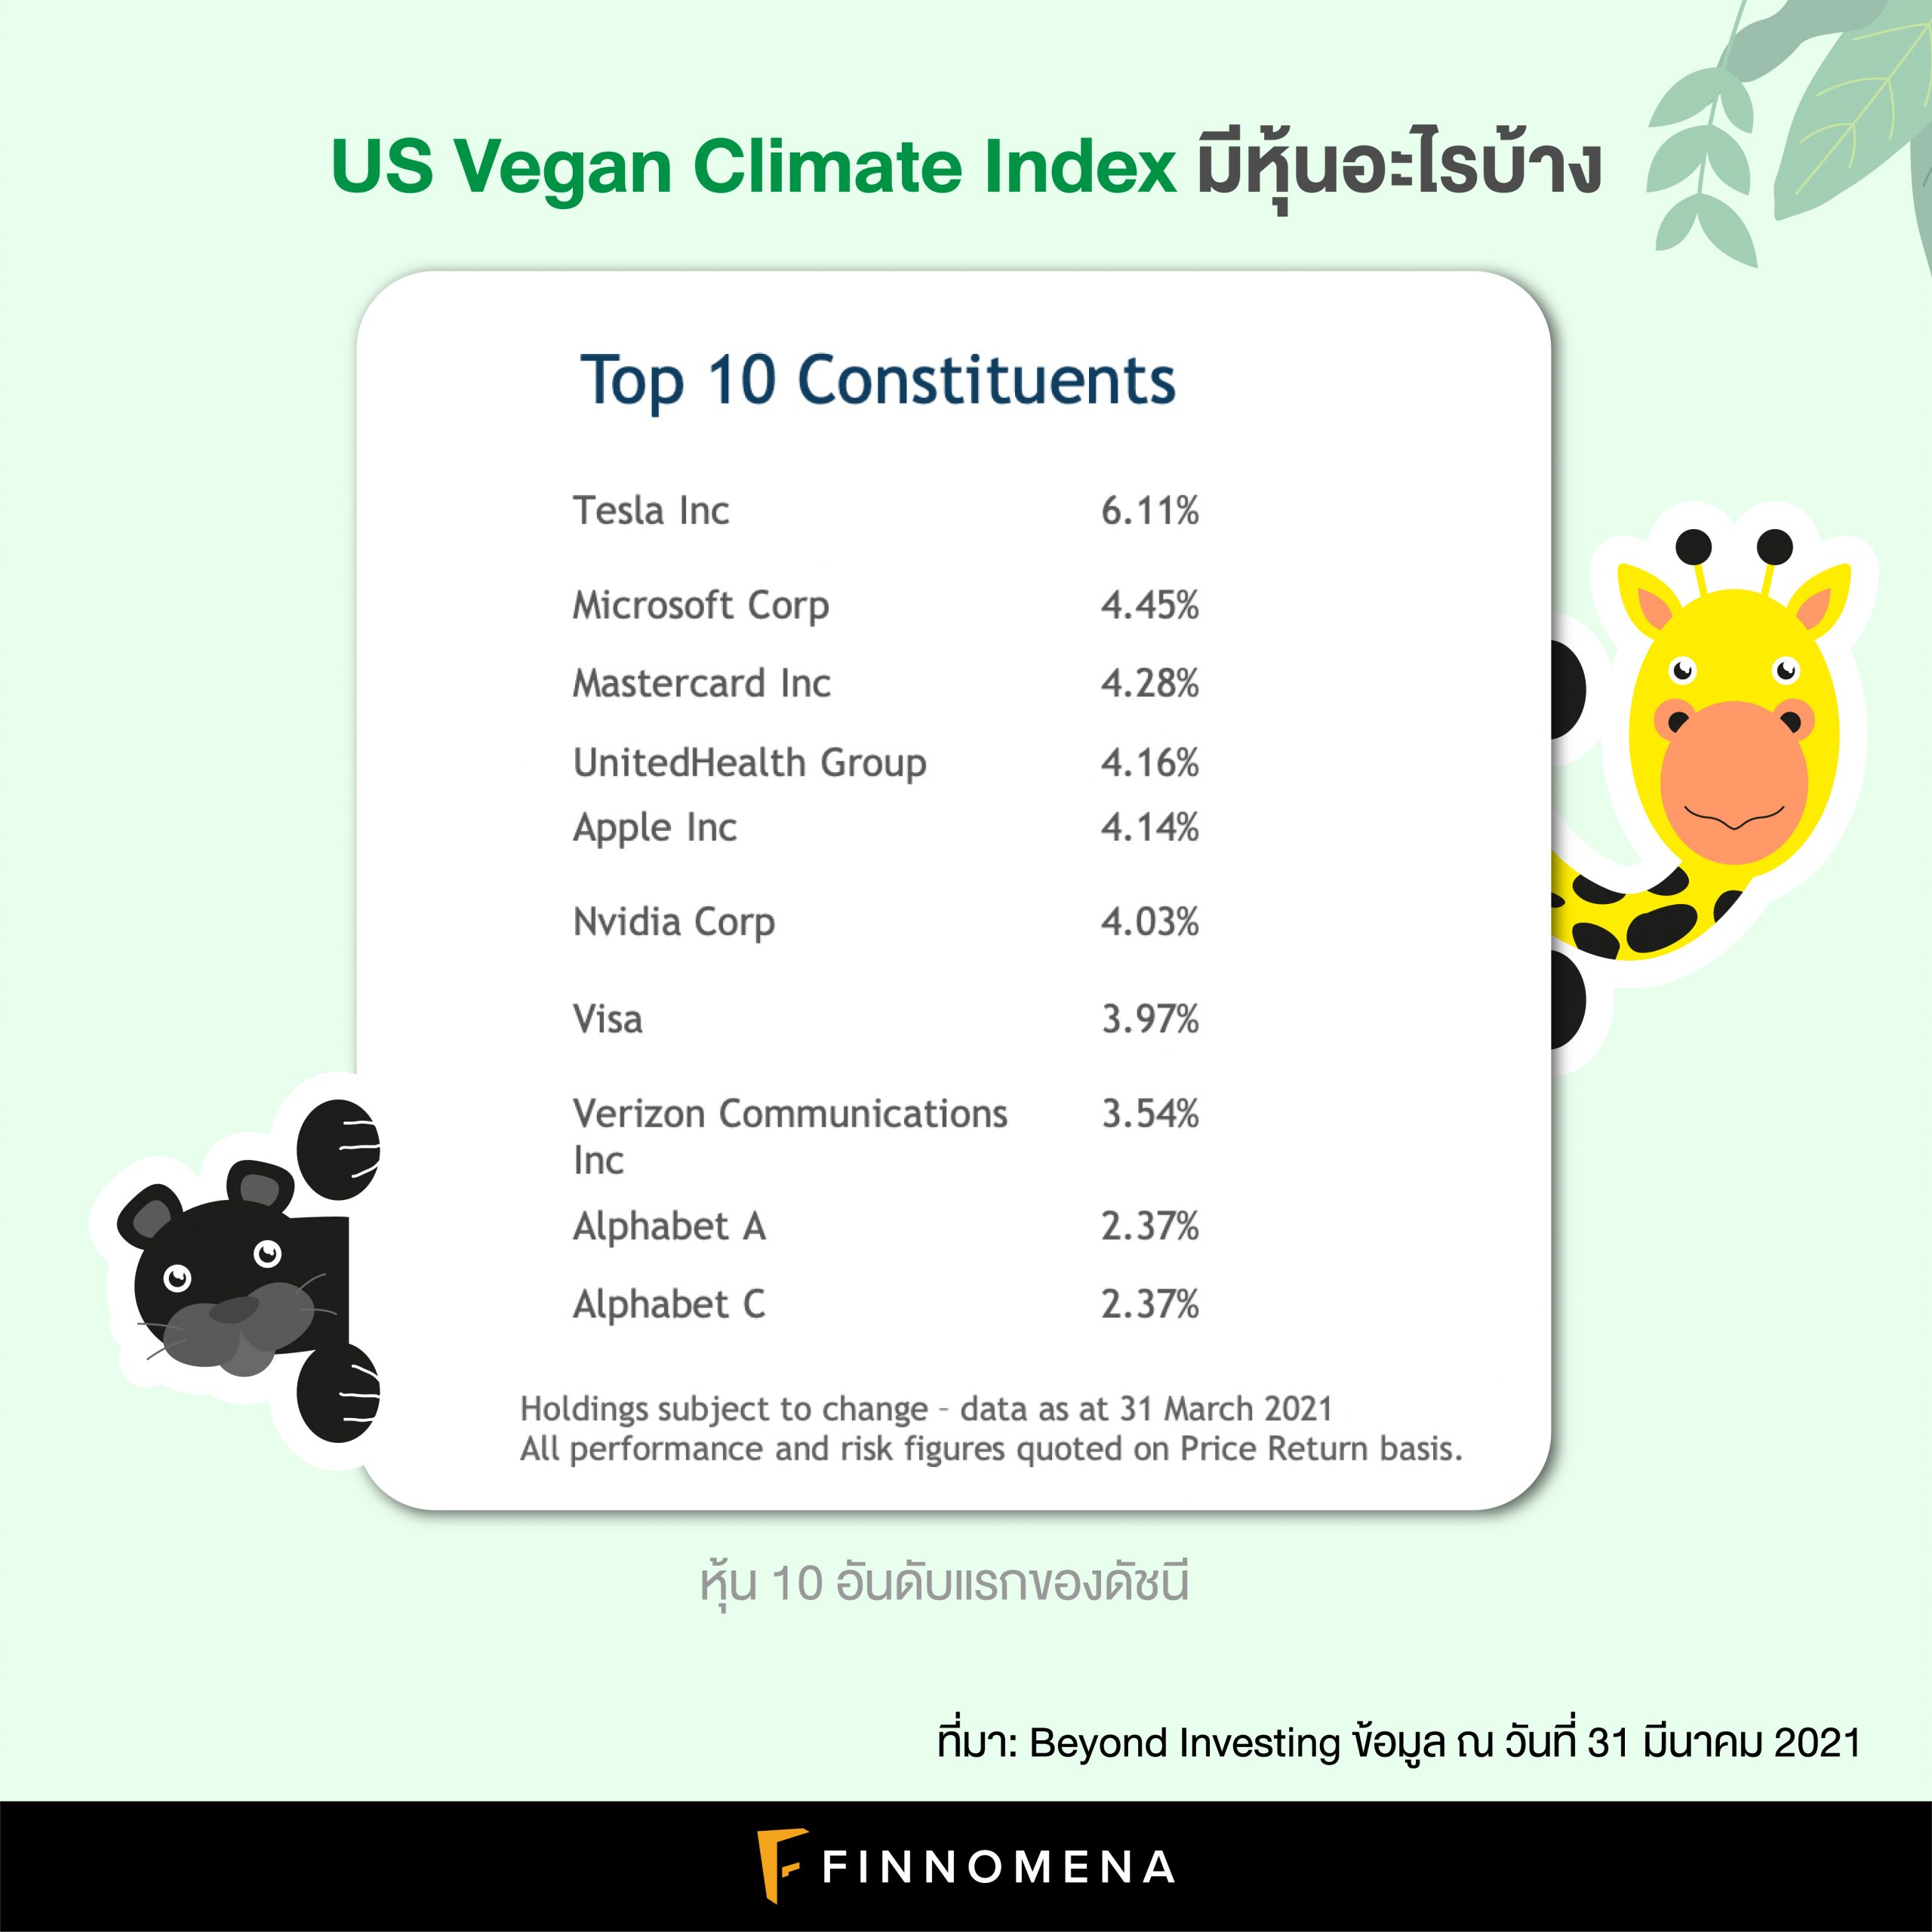 ทำความรู้จัก US Vegan Climate Index: ดัชนีหุ้นสำหรับคนรักสัตว์